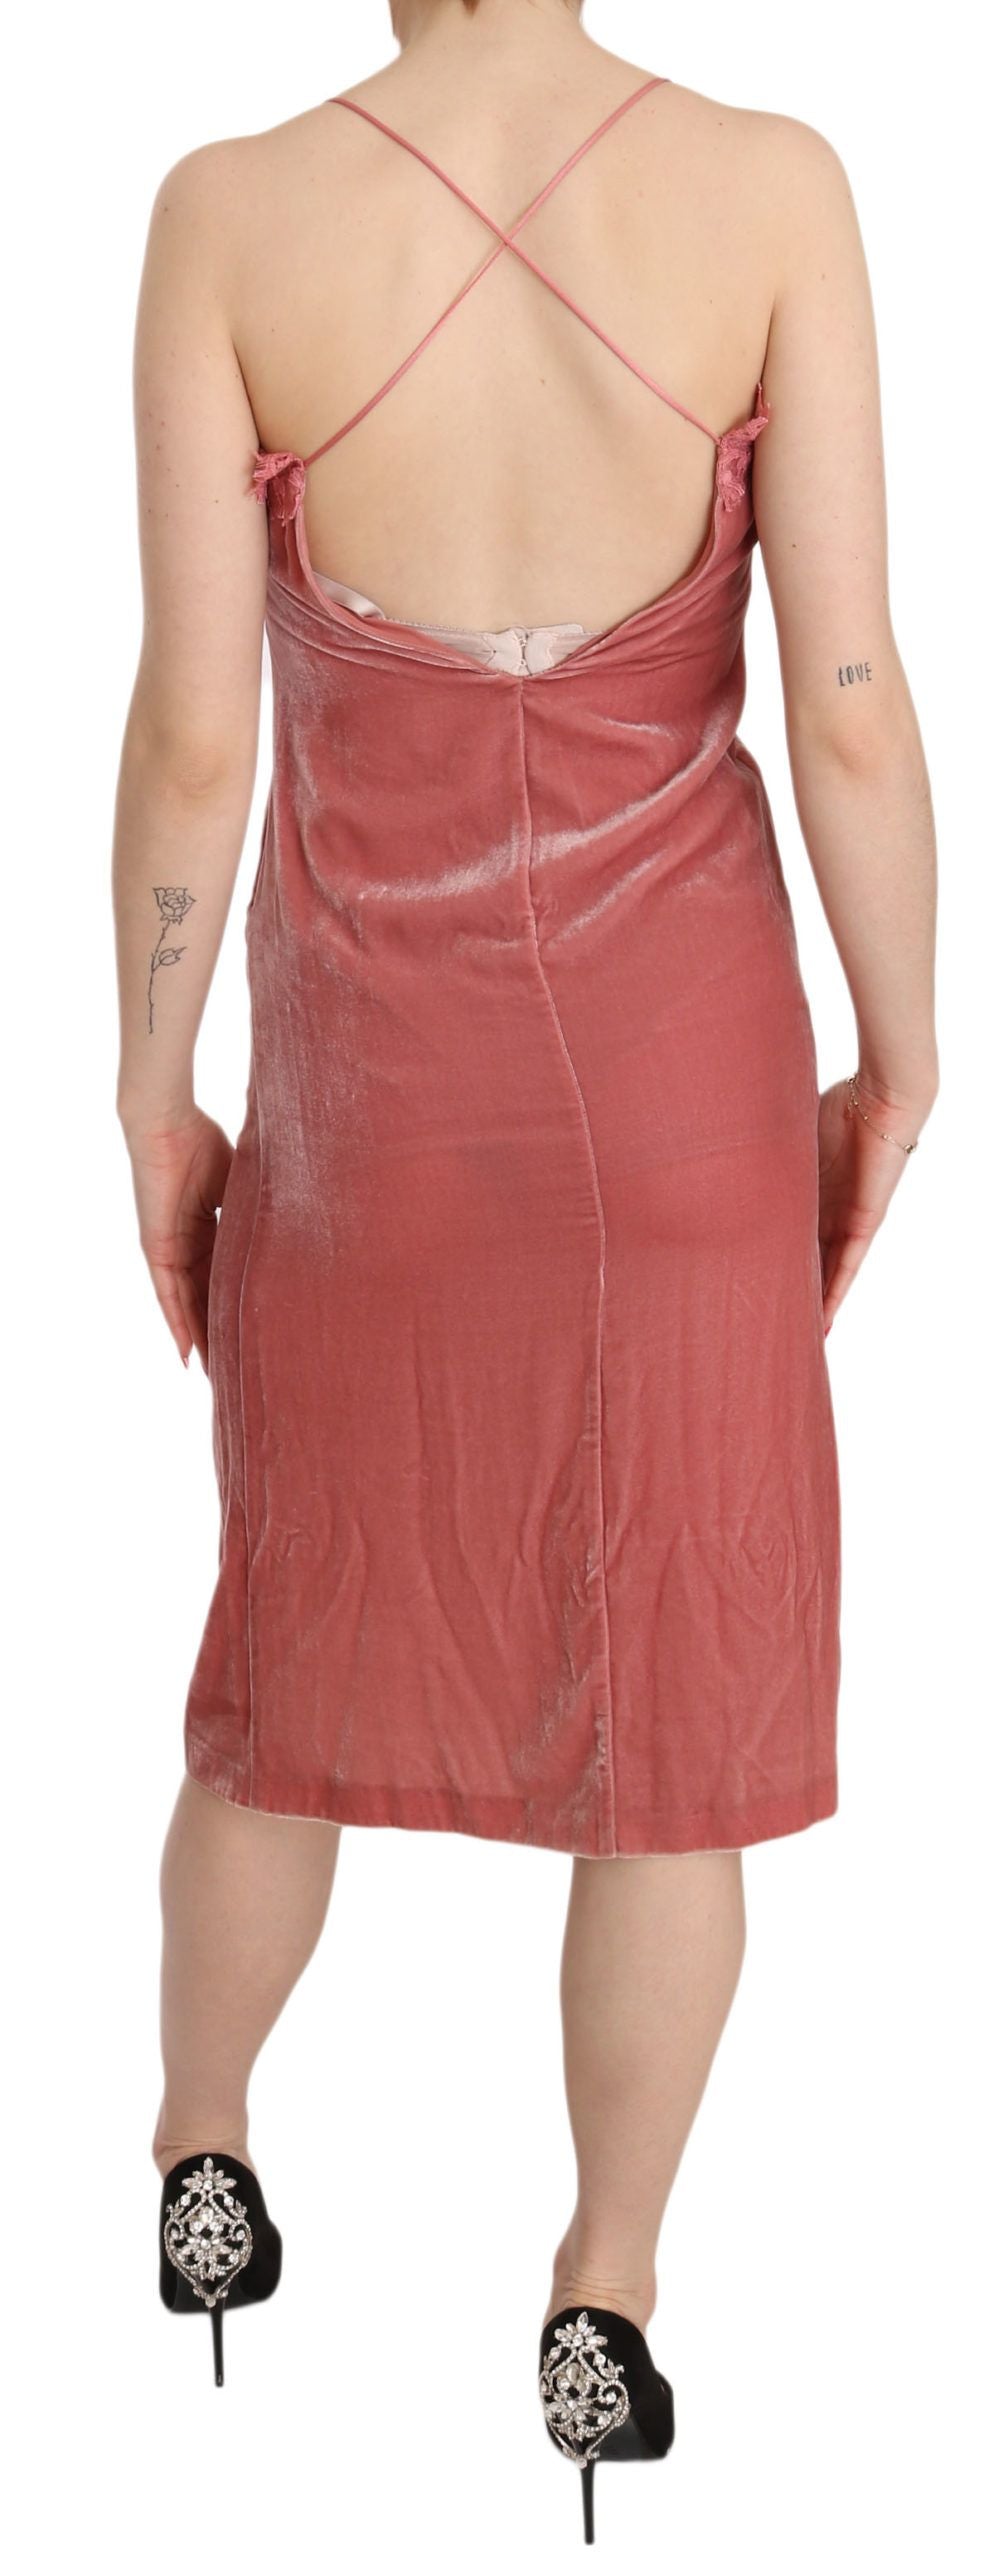 PINKO Pink Lace Spaghetti Strap Side Slit Shift Midi Dress